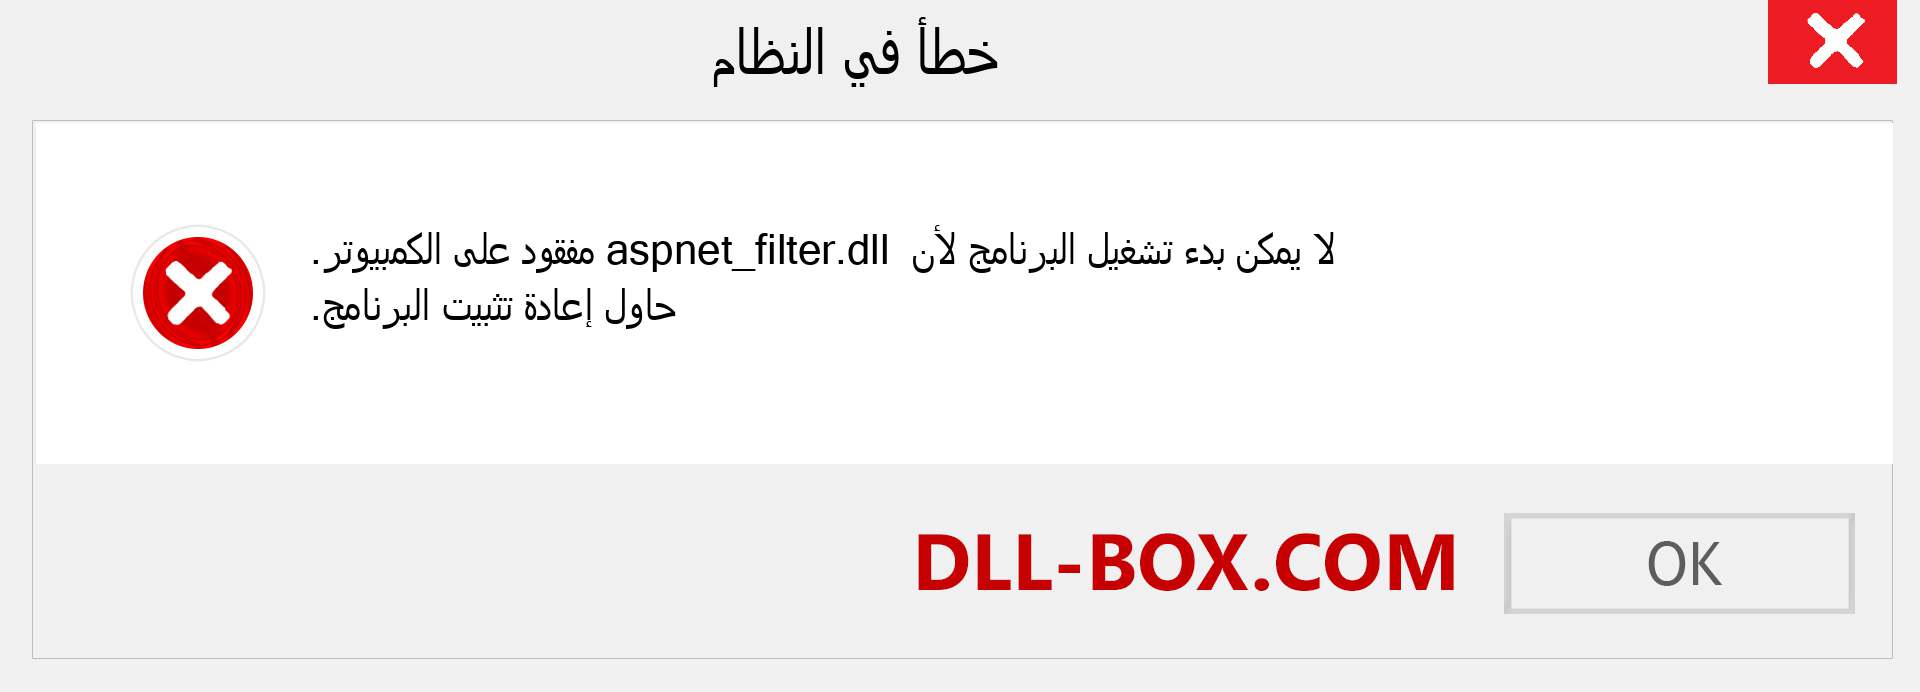 ملف aspnet_filter.dll مفقود ؟. التنزيل لنظام التشغيل Windows 7 و 8 و 10 - إصلاح خطأ aspnet_filter dll المفقود على Windows والصور والصور